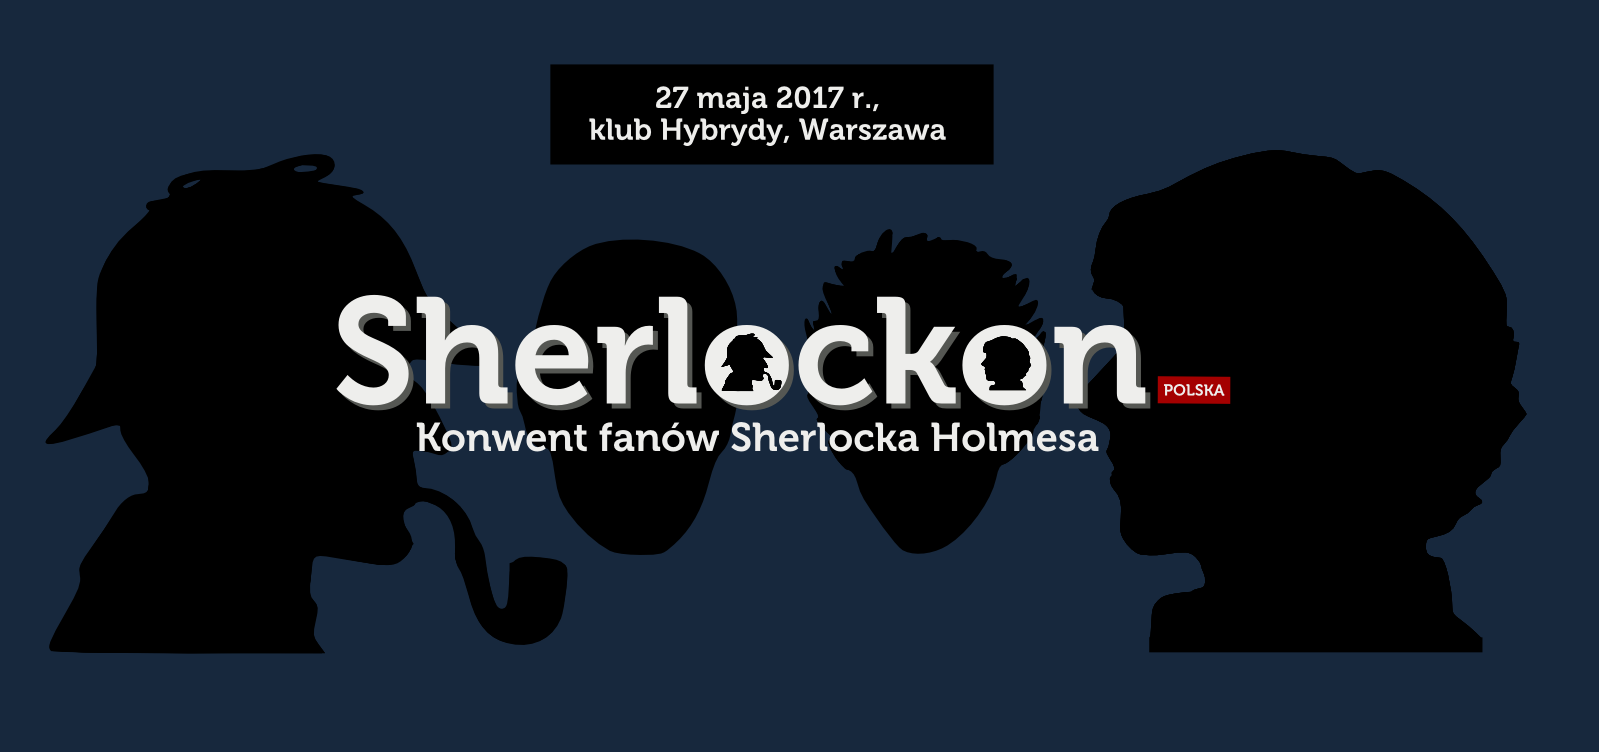 Sherlockon Polska